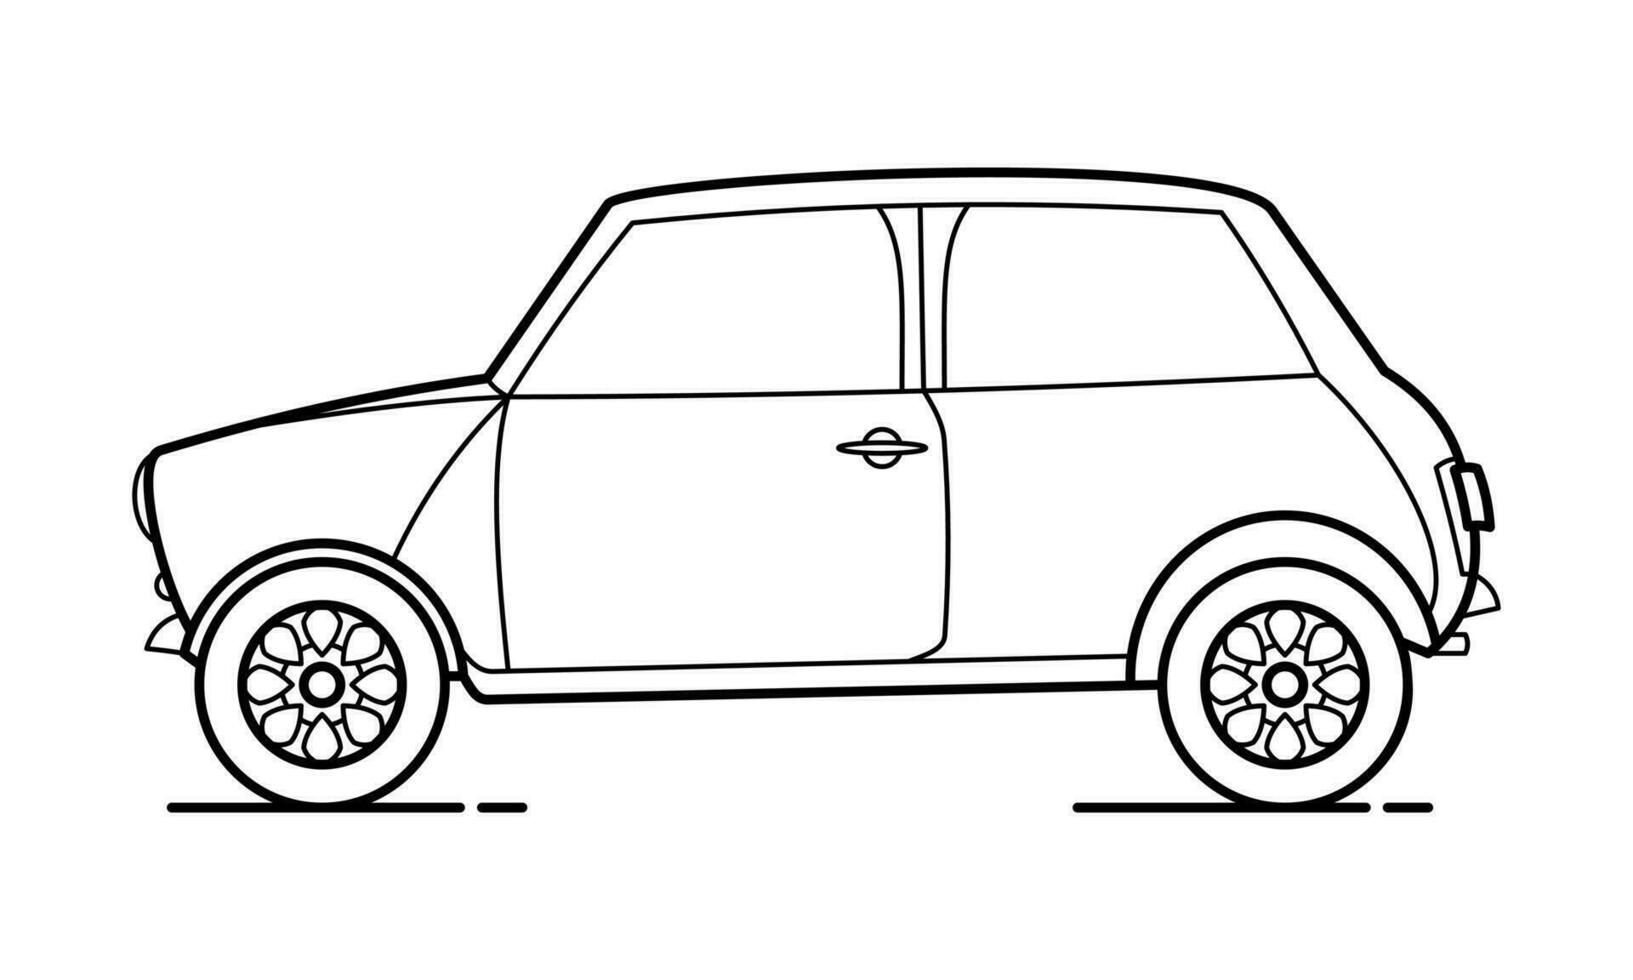 diario coche contorno diseño para dibujo libro vector